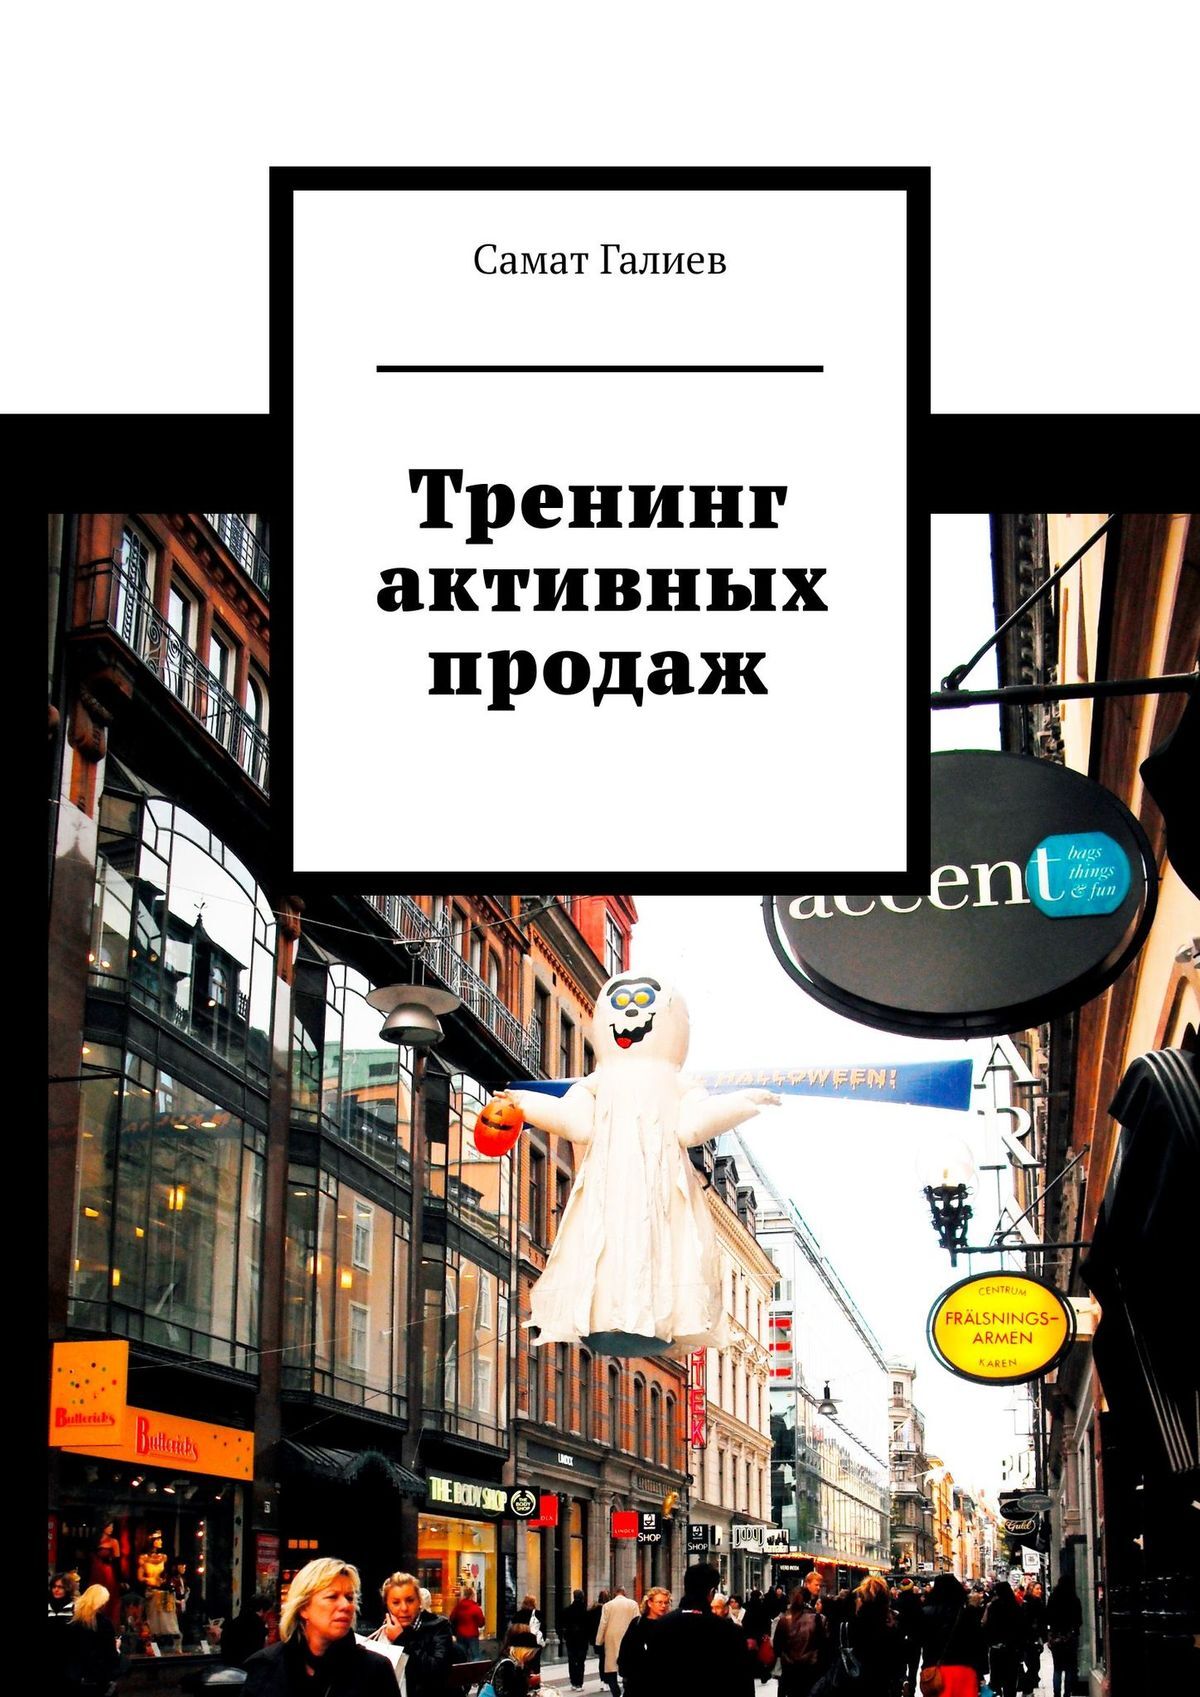 Книга  Тренинг продаж созданная Самат Галиев может относится к жанру общая психология, просто о бизнесе, руководства. Стоимость электронной книги Тренинг продаж с идентификатором 21548176 составляет 100.00 руб.